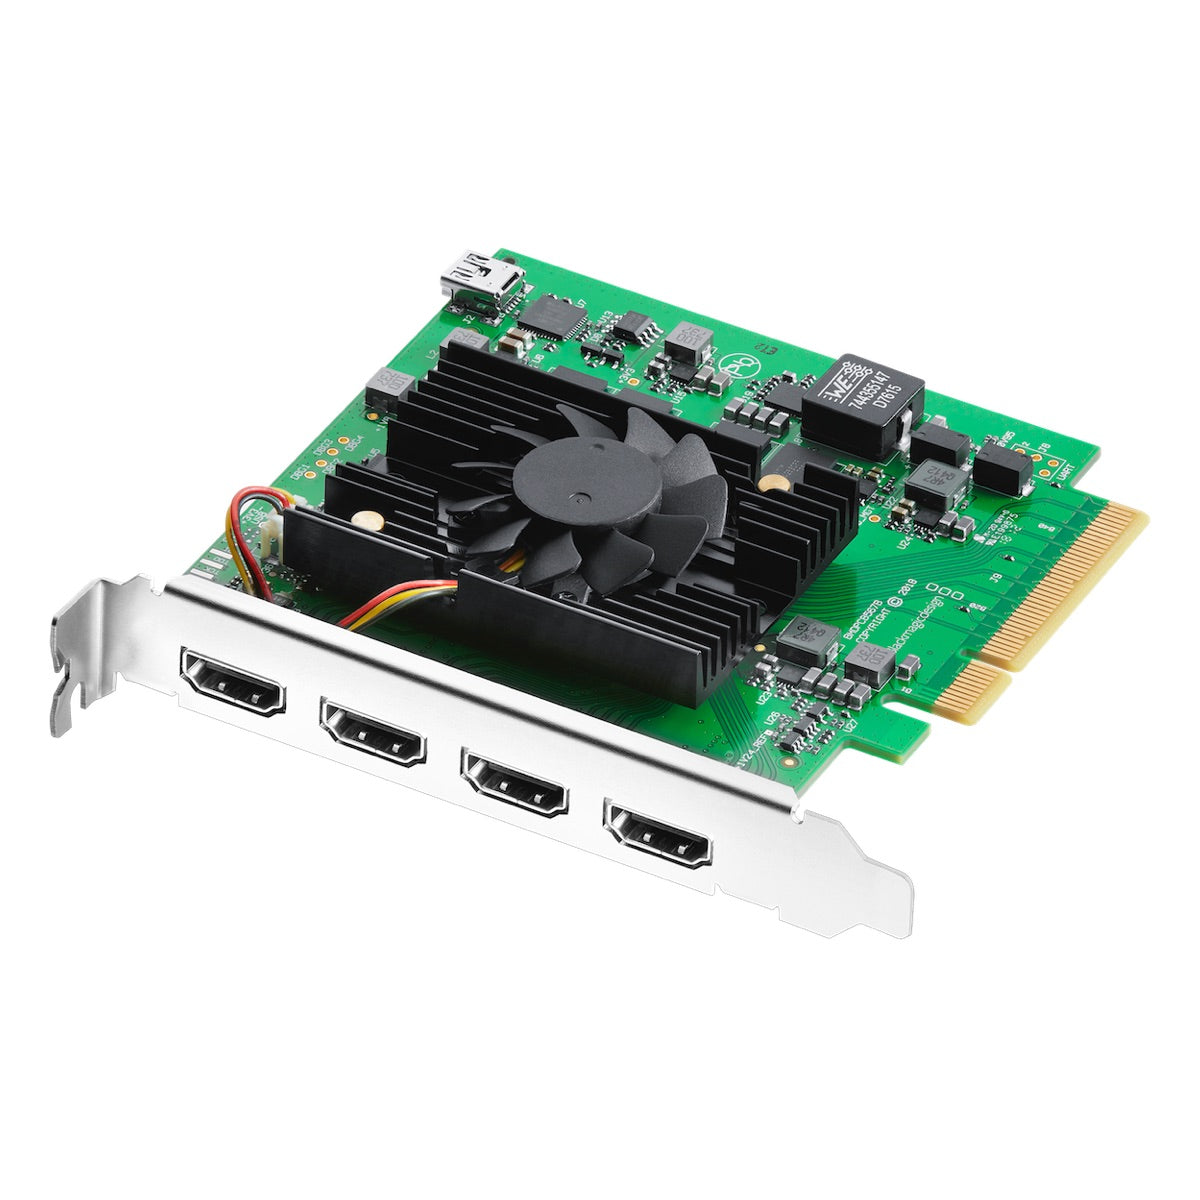 Blackmagic DeckLink Quad HDMI Recorder - PCIe Capture Card